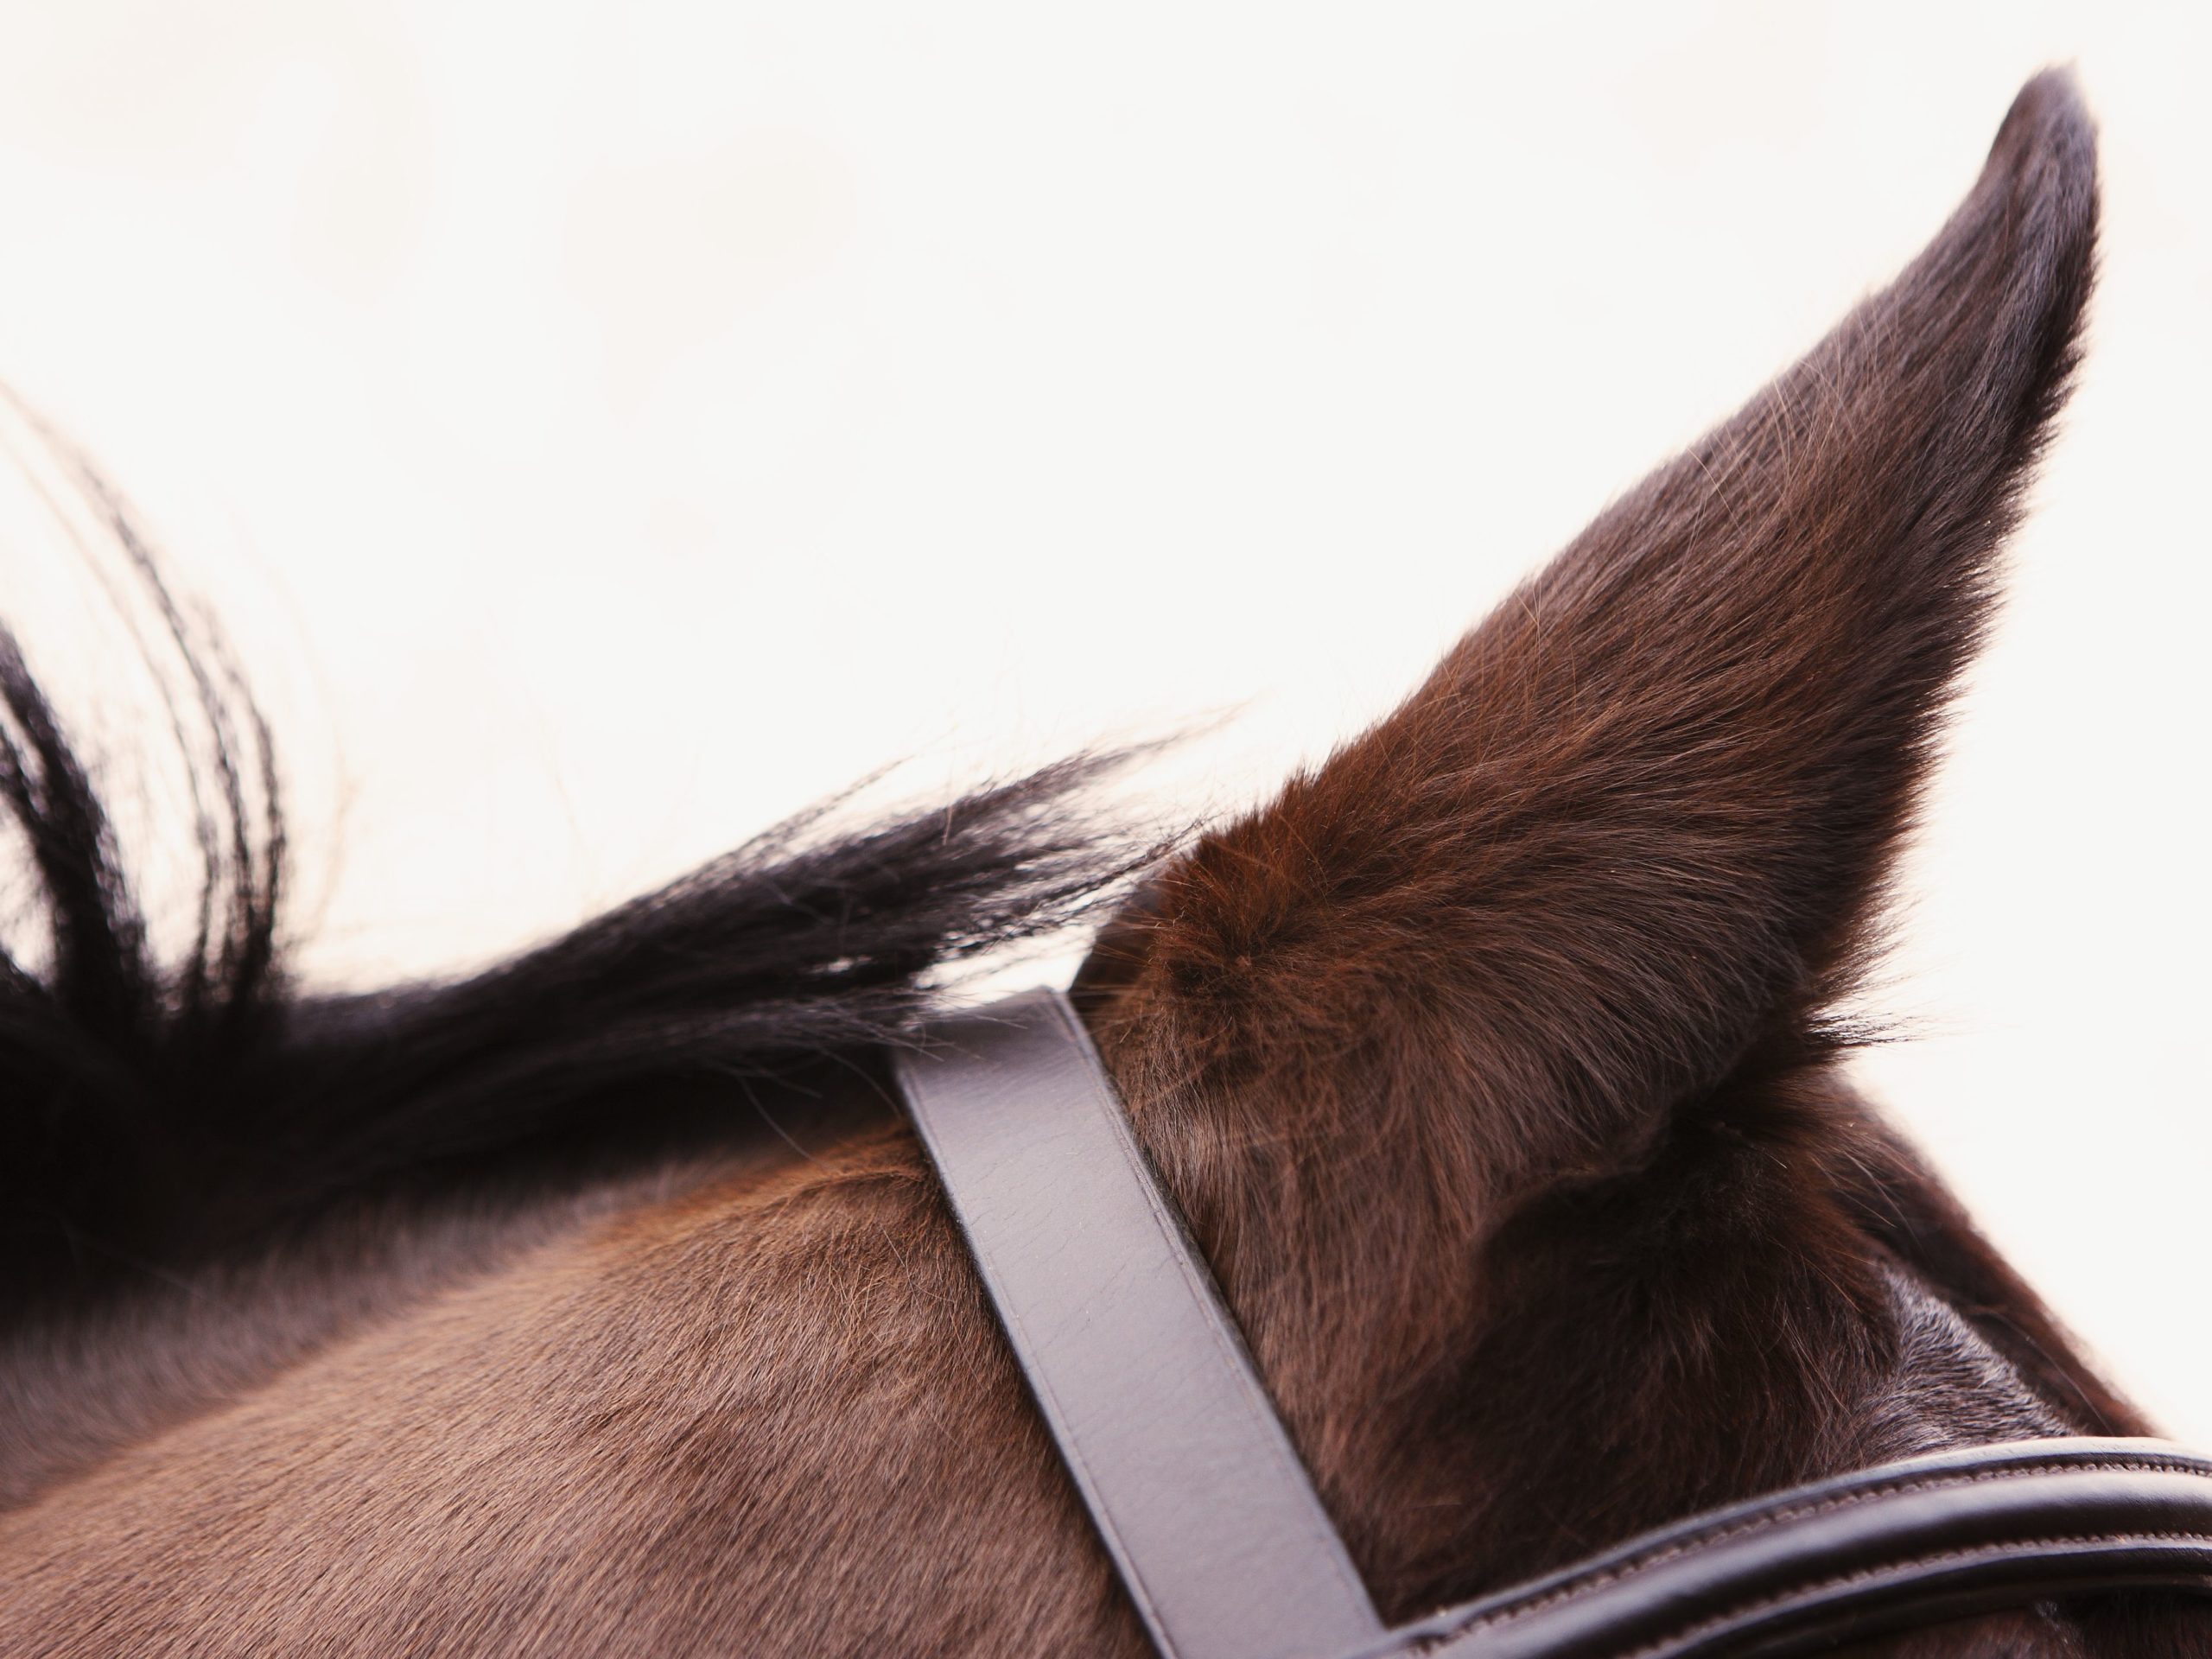 Os cavalos podem ouvir sons a distâncias maiores do que nós humanos Muitas vezes, o som está há vários quilômetros de distância